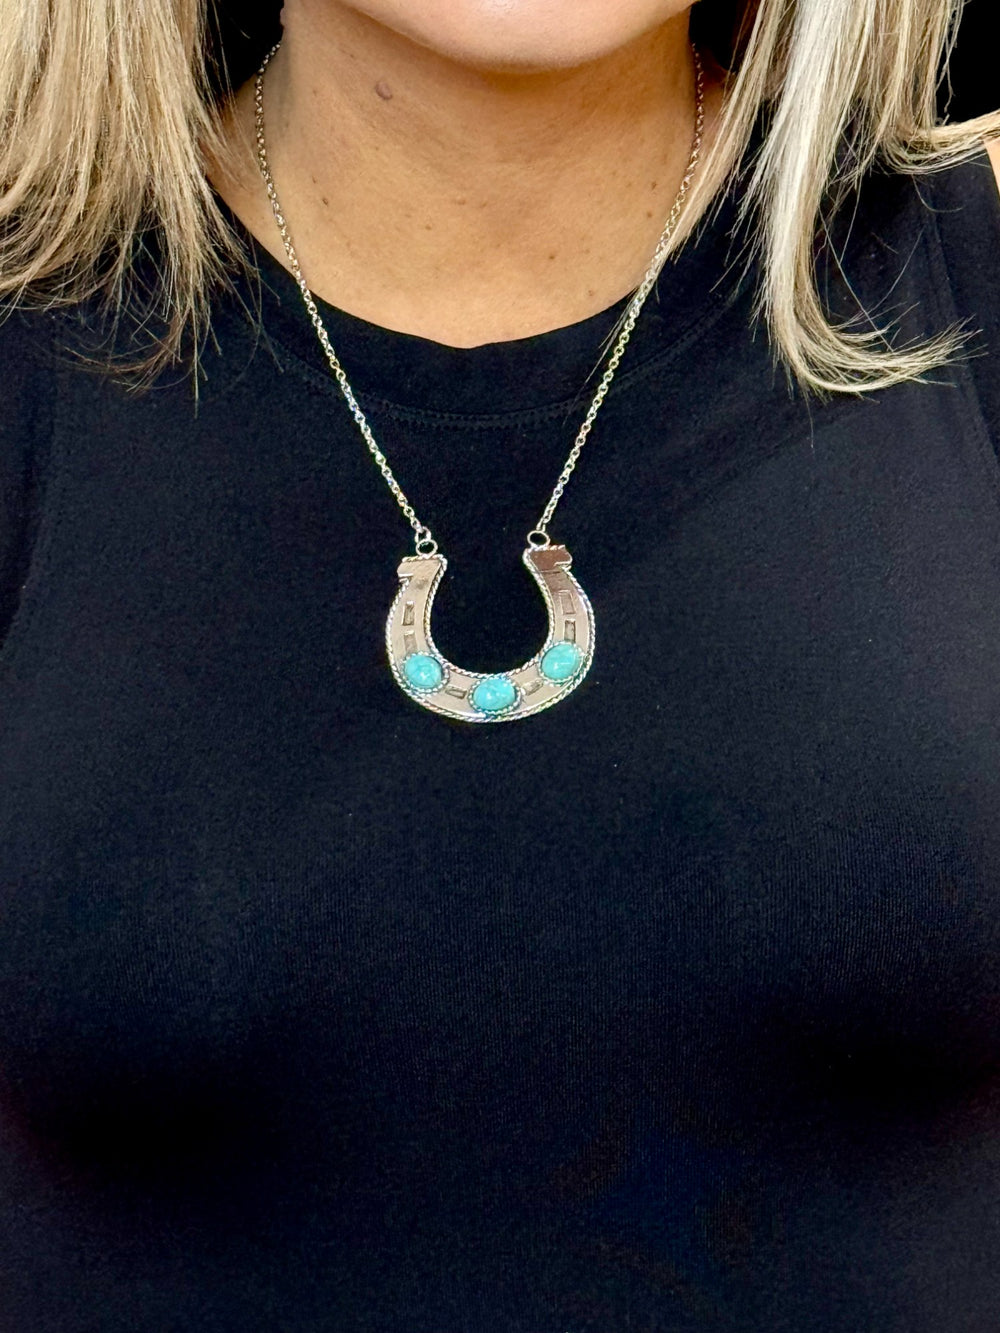 West & Co - Turquoise Horseshoe Necklace